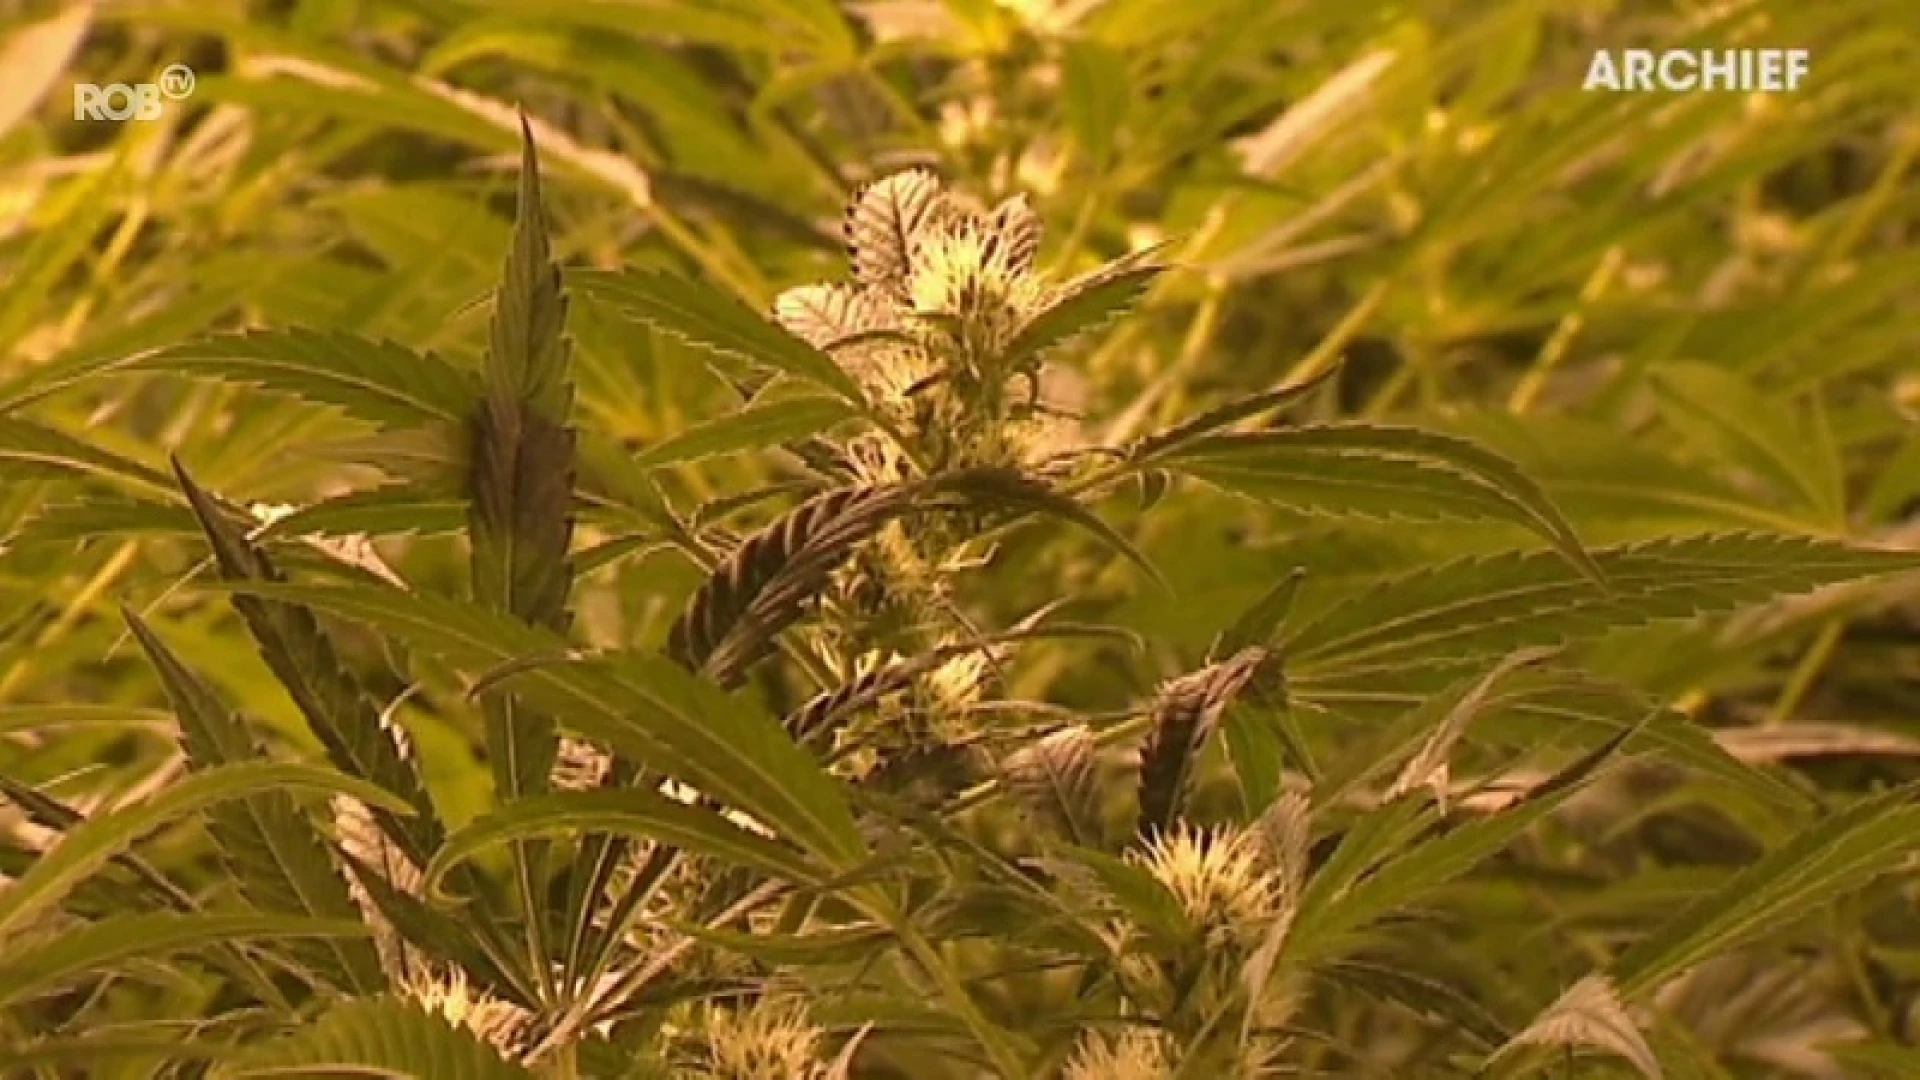 Cannabisteler (42) met plantages in onze regio veroordeeld tot 2 jaar cel en boete van 8000 euro